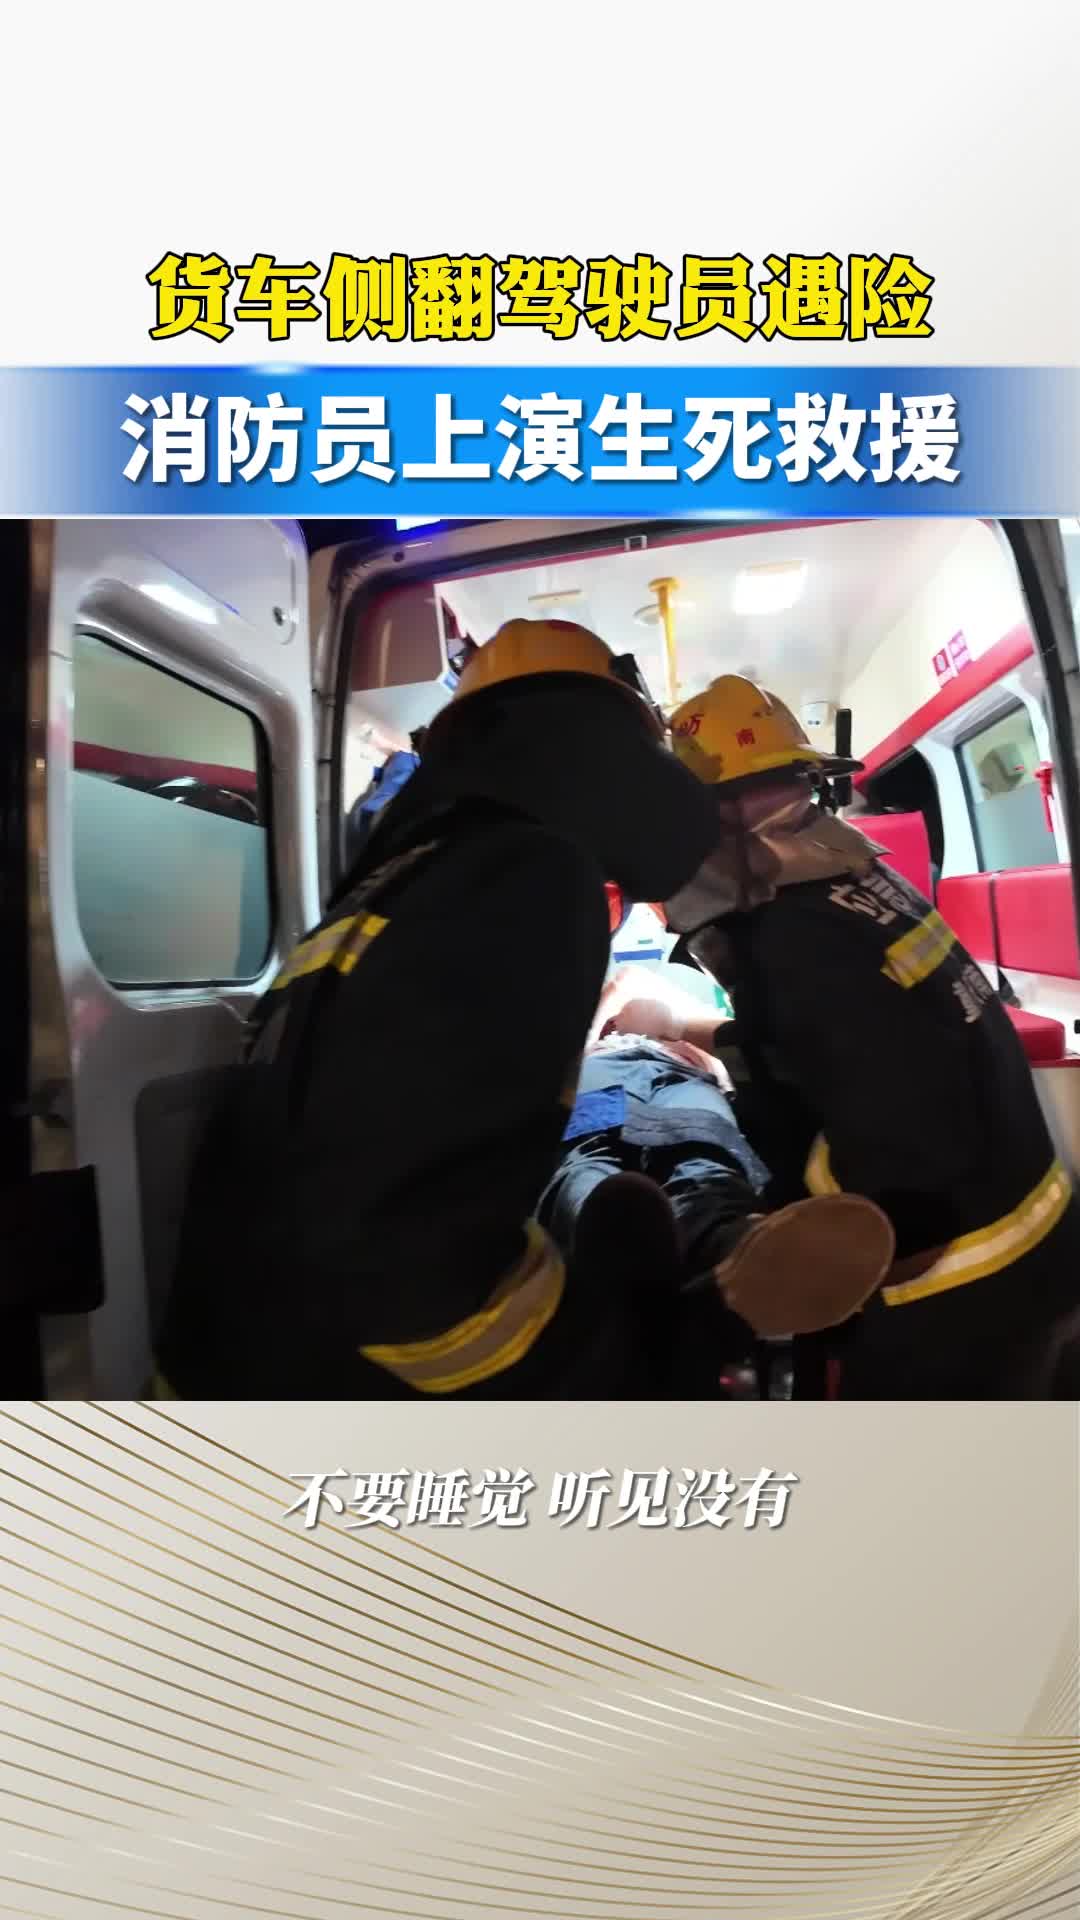 货车侧翻驾驶员遇险 消防员上演生死救援